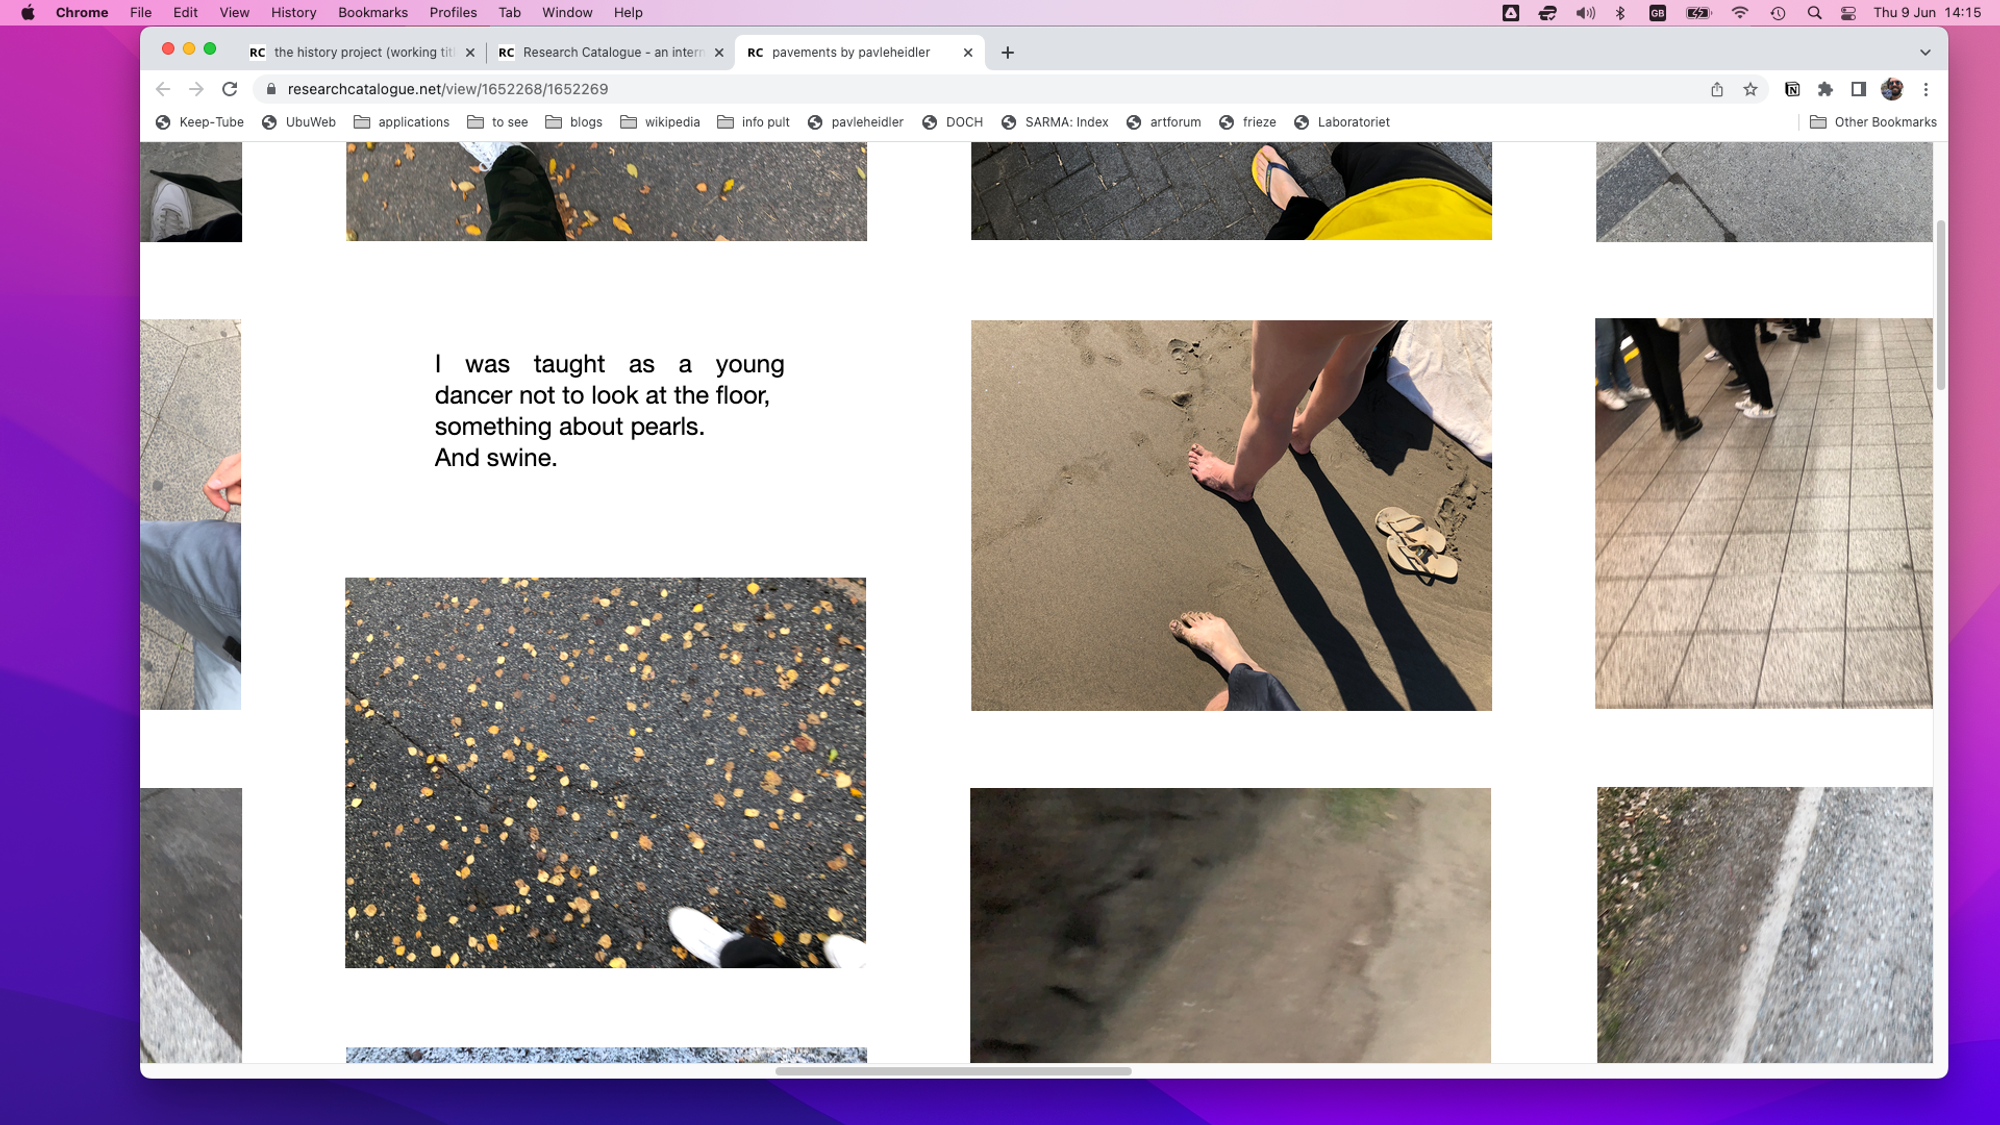 screenshot, pavements © 2020 pavleheidler [visual poem]